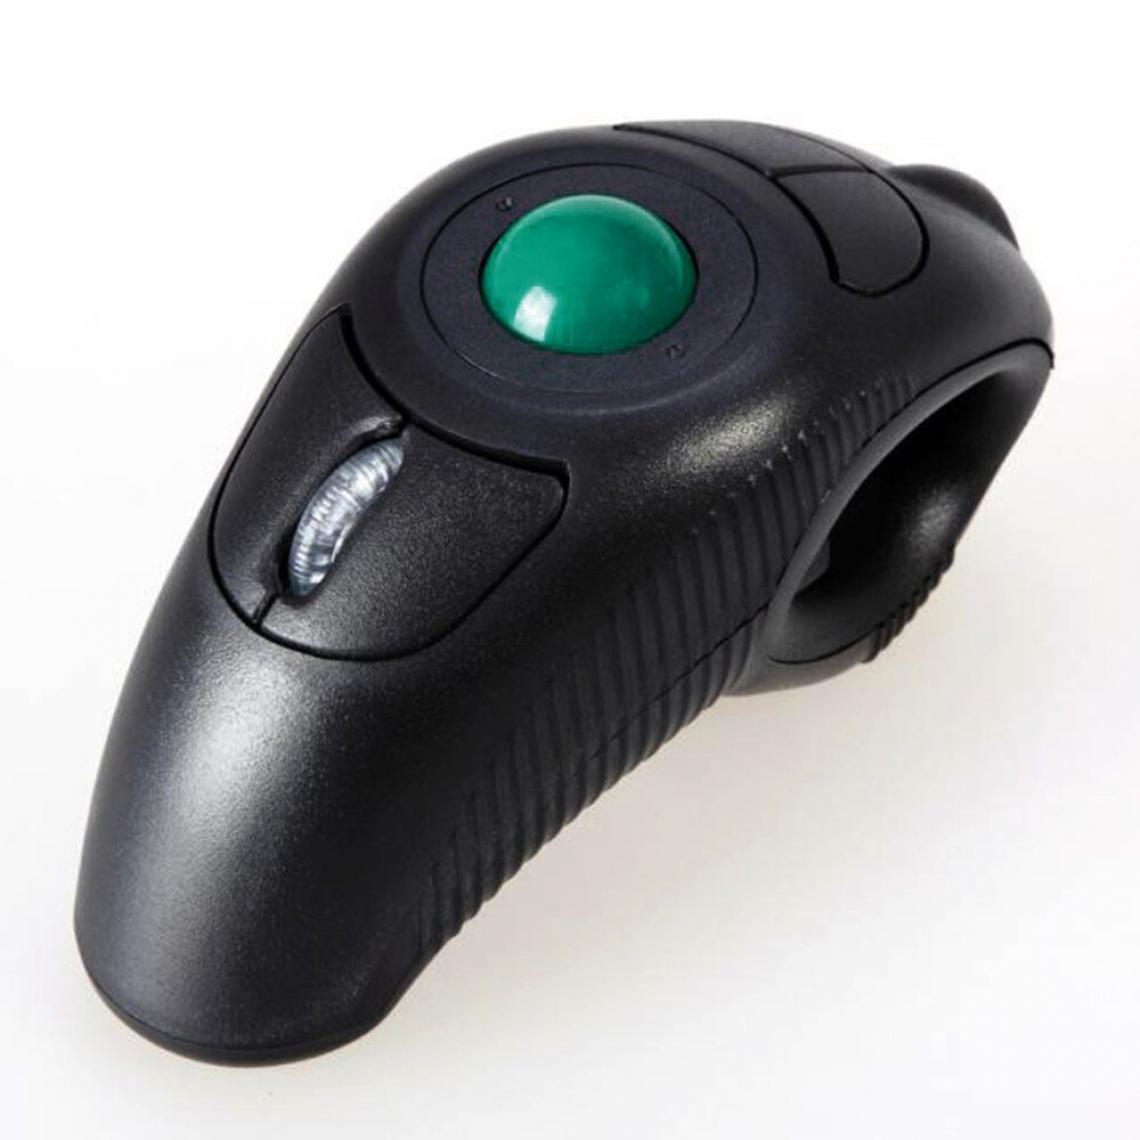 Universal - 2.4g air sans fil souris trackball portable port USB contrôle du pouce souris trackball portable distance de réception 15 mètres noir - Souris